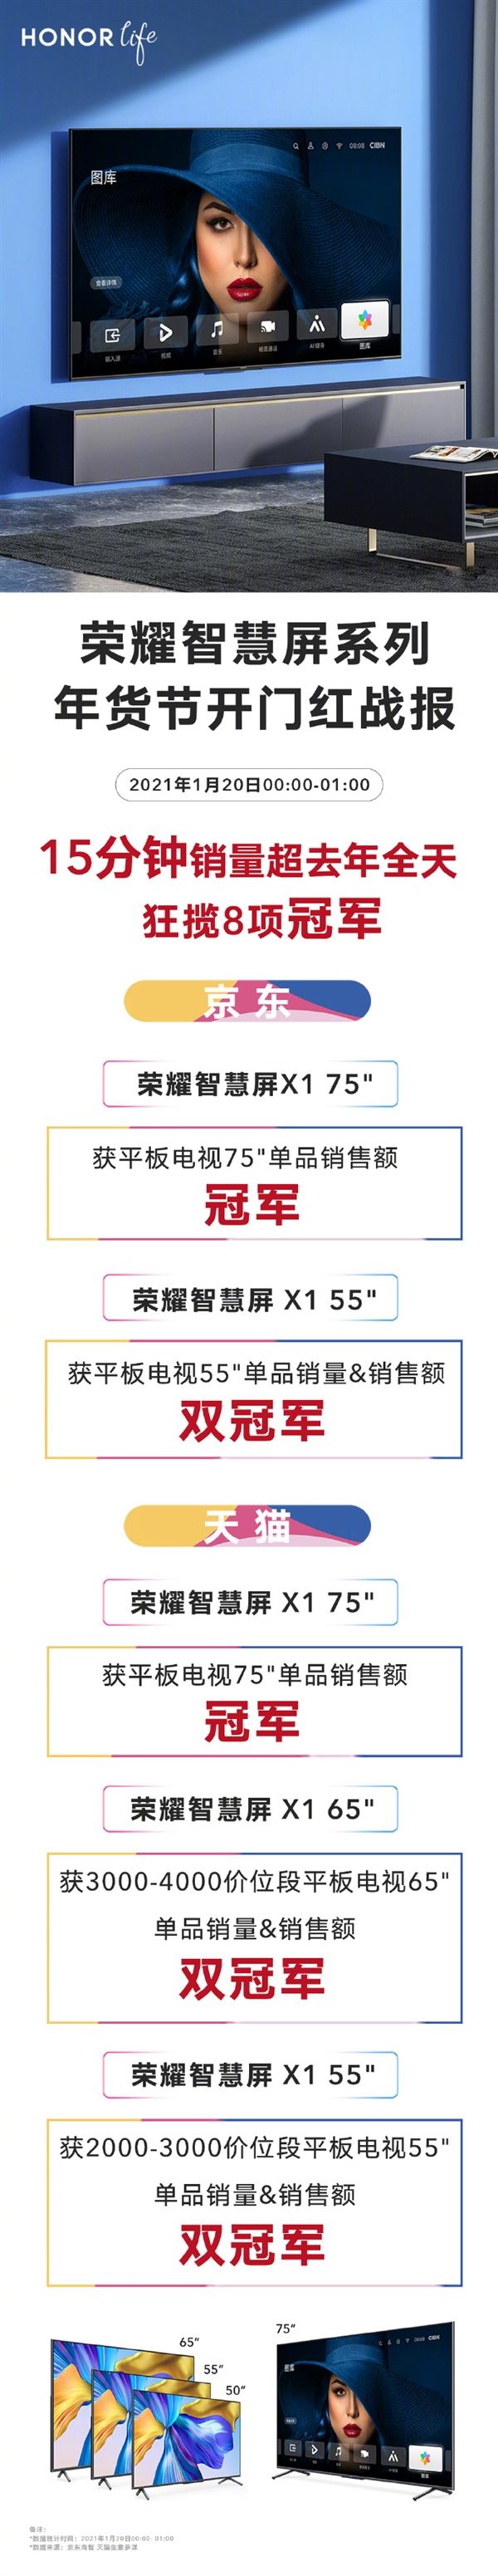 荣耀发年货节战报 15分销量超去年全年狂揽8项冠军